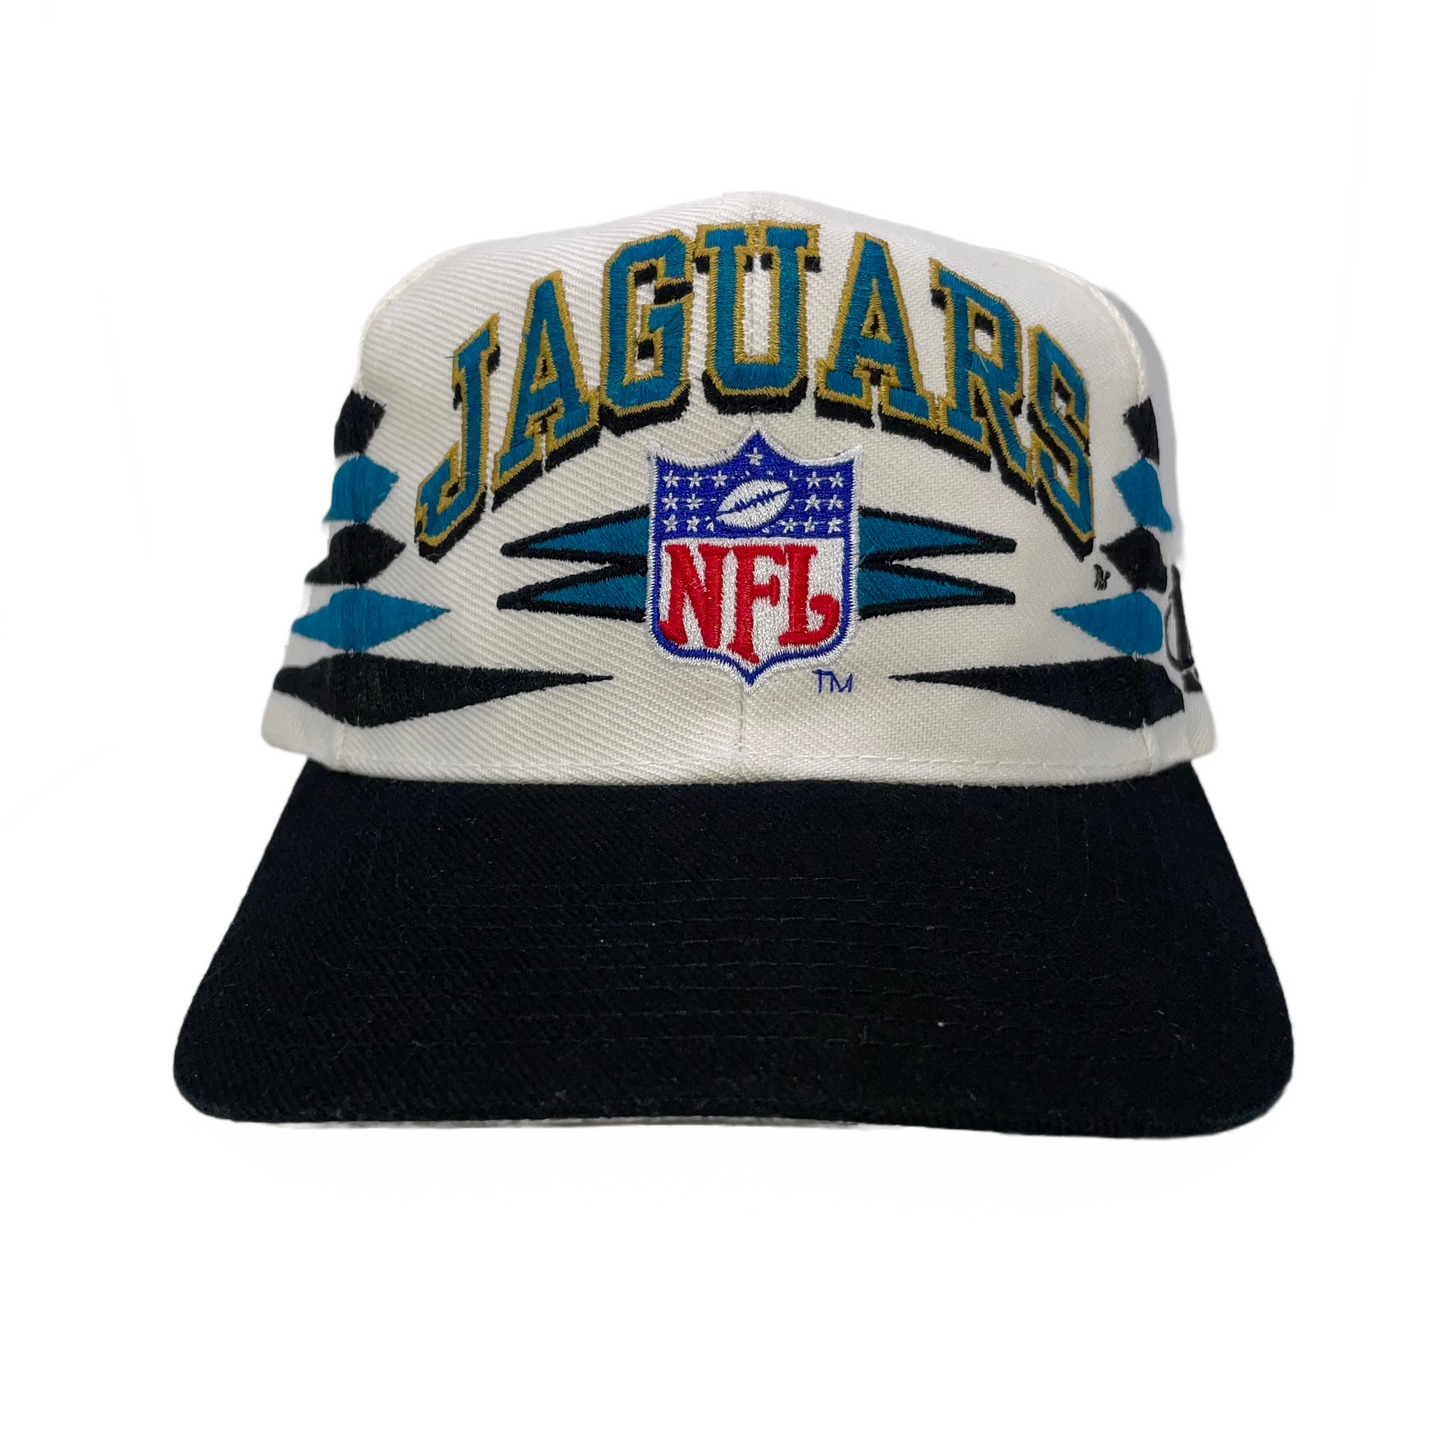 Vintage Jacksonville Jaguars LOGO ATHLETIC "Diamond Cut" hat